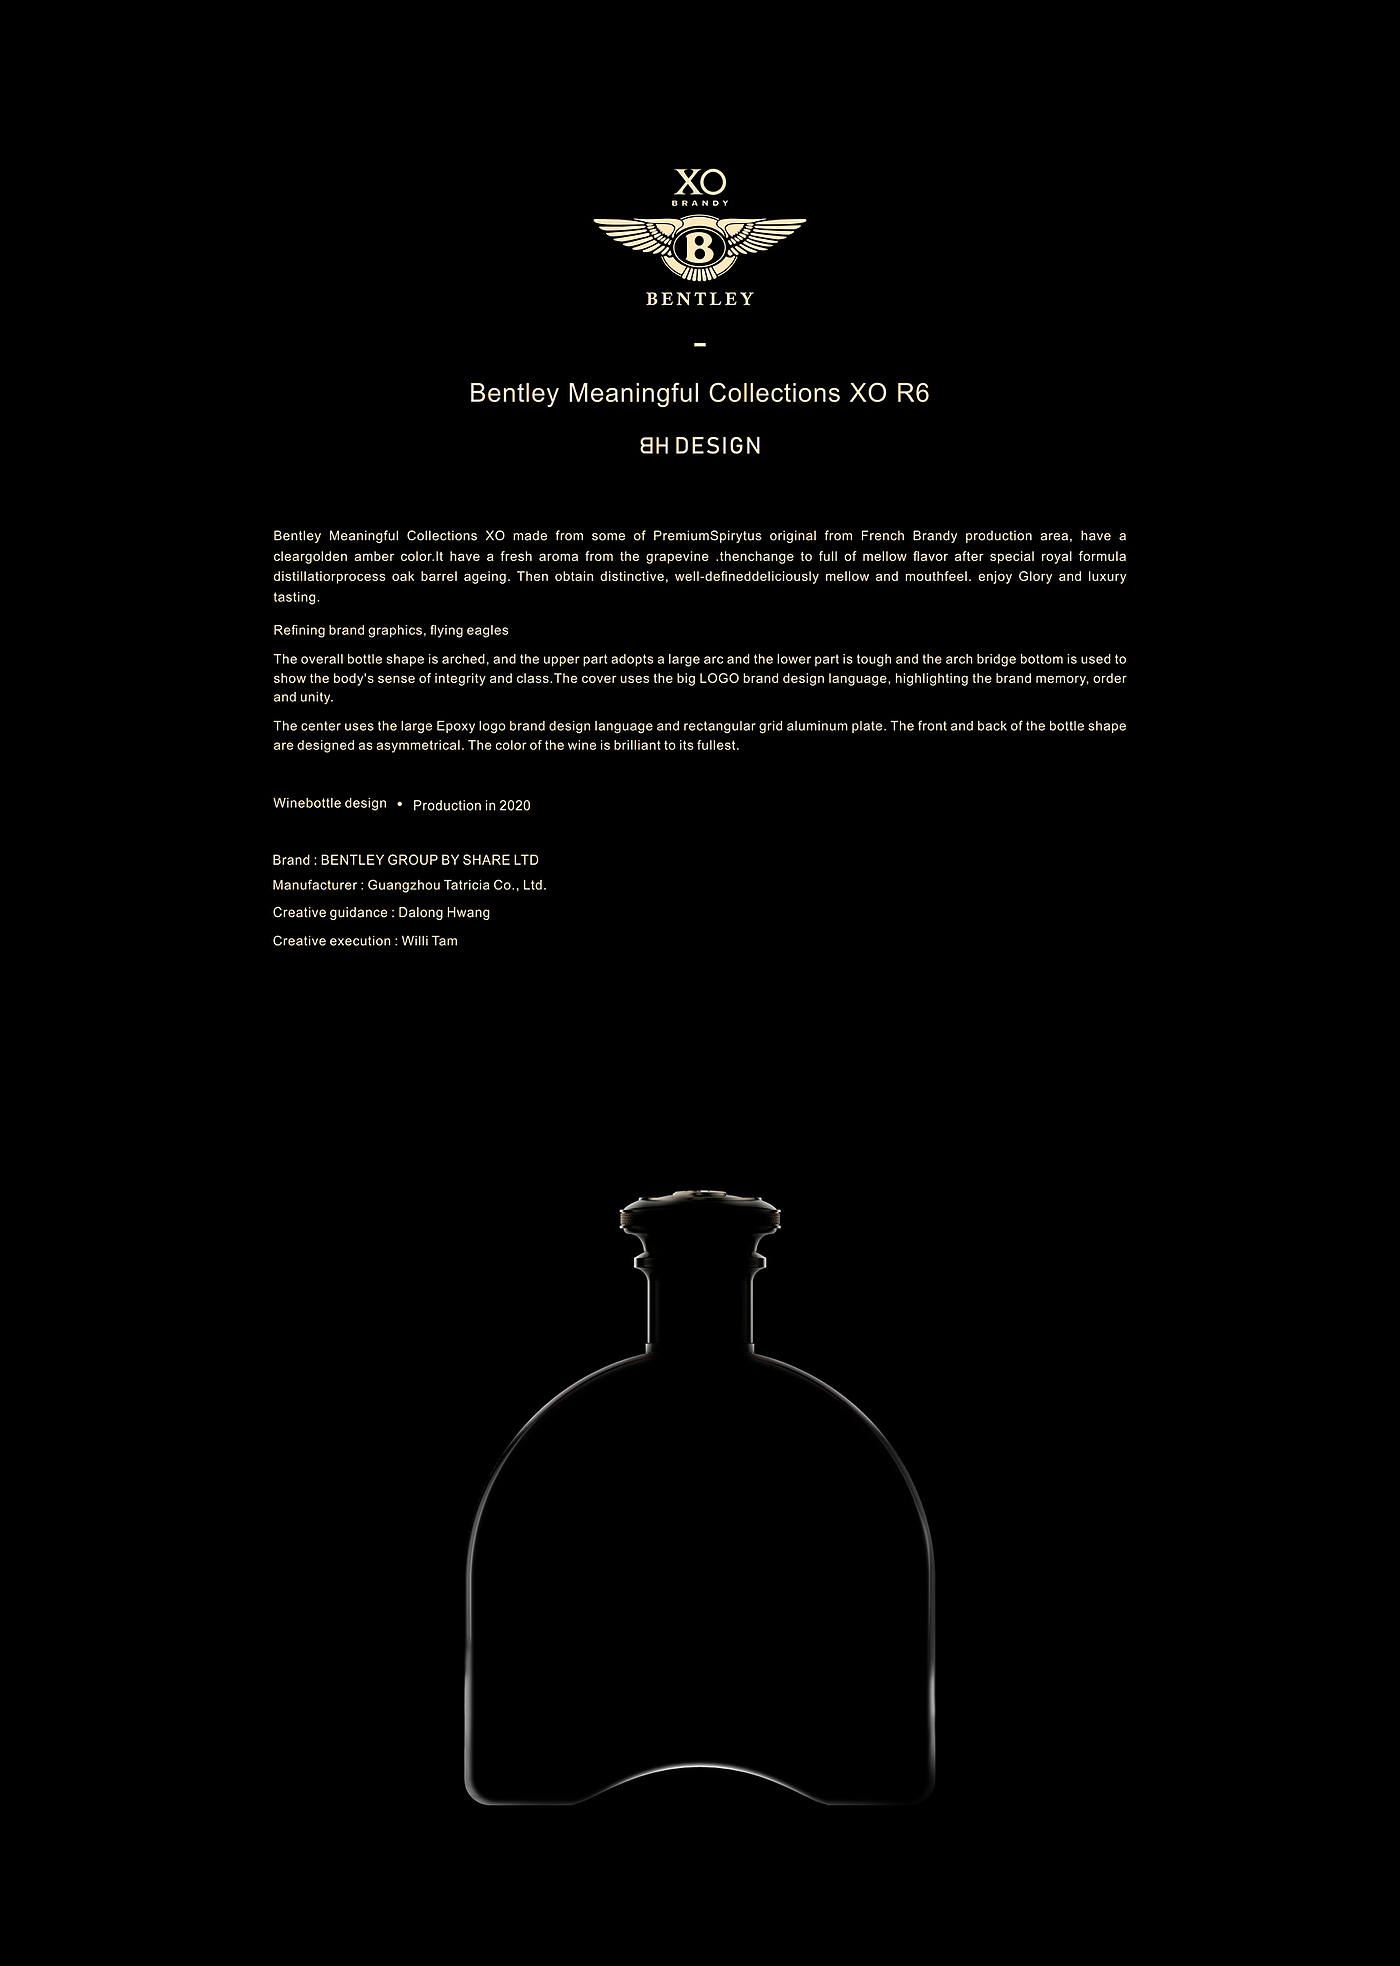 瓶型设计，洋酒，酒，白兰地，酒瓶设计，酒包装，由白致黑，BH DEISGN，